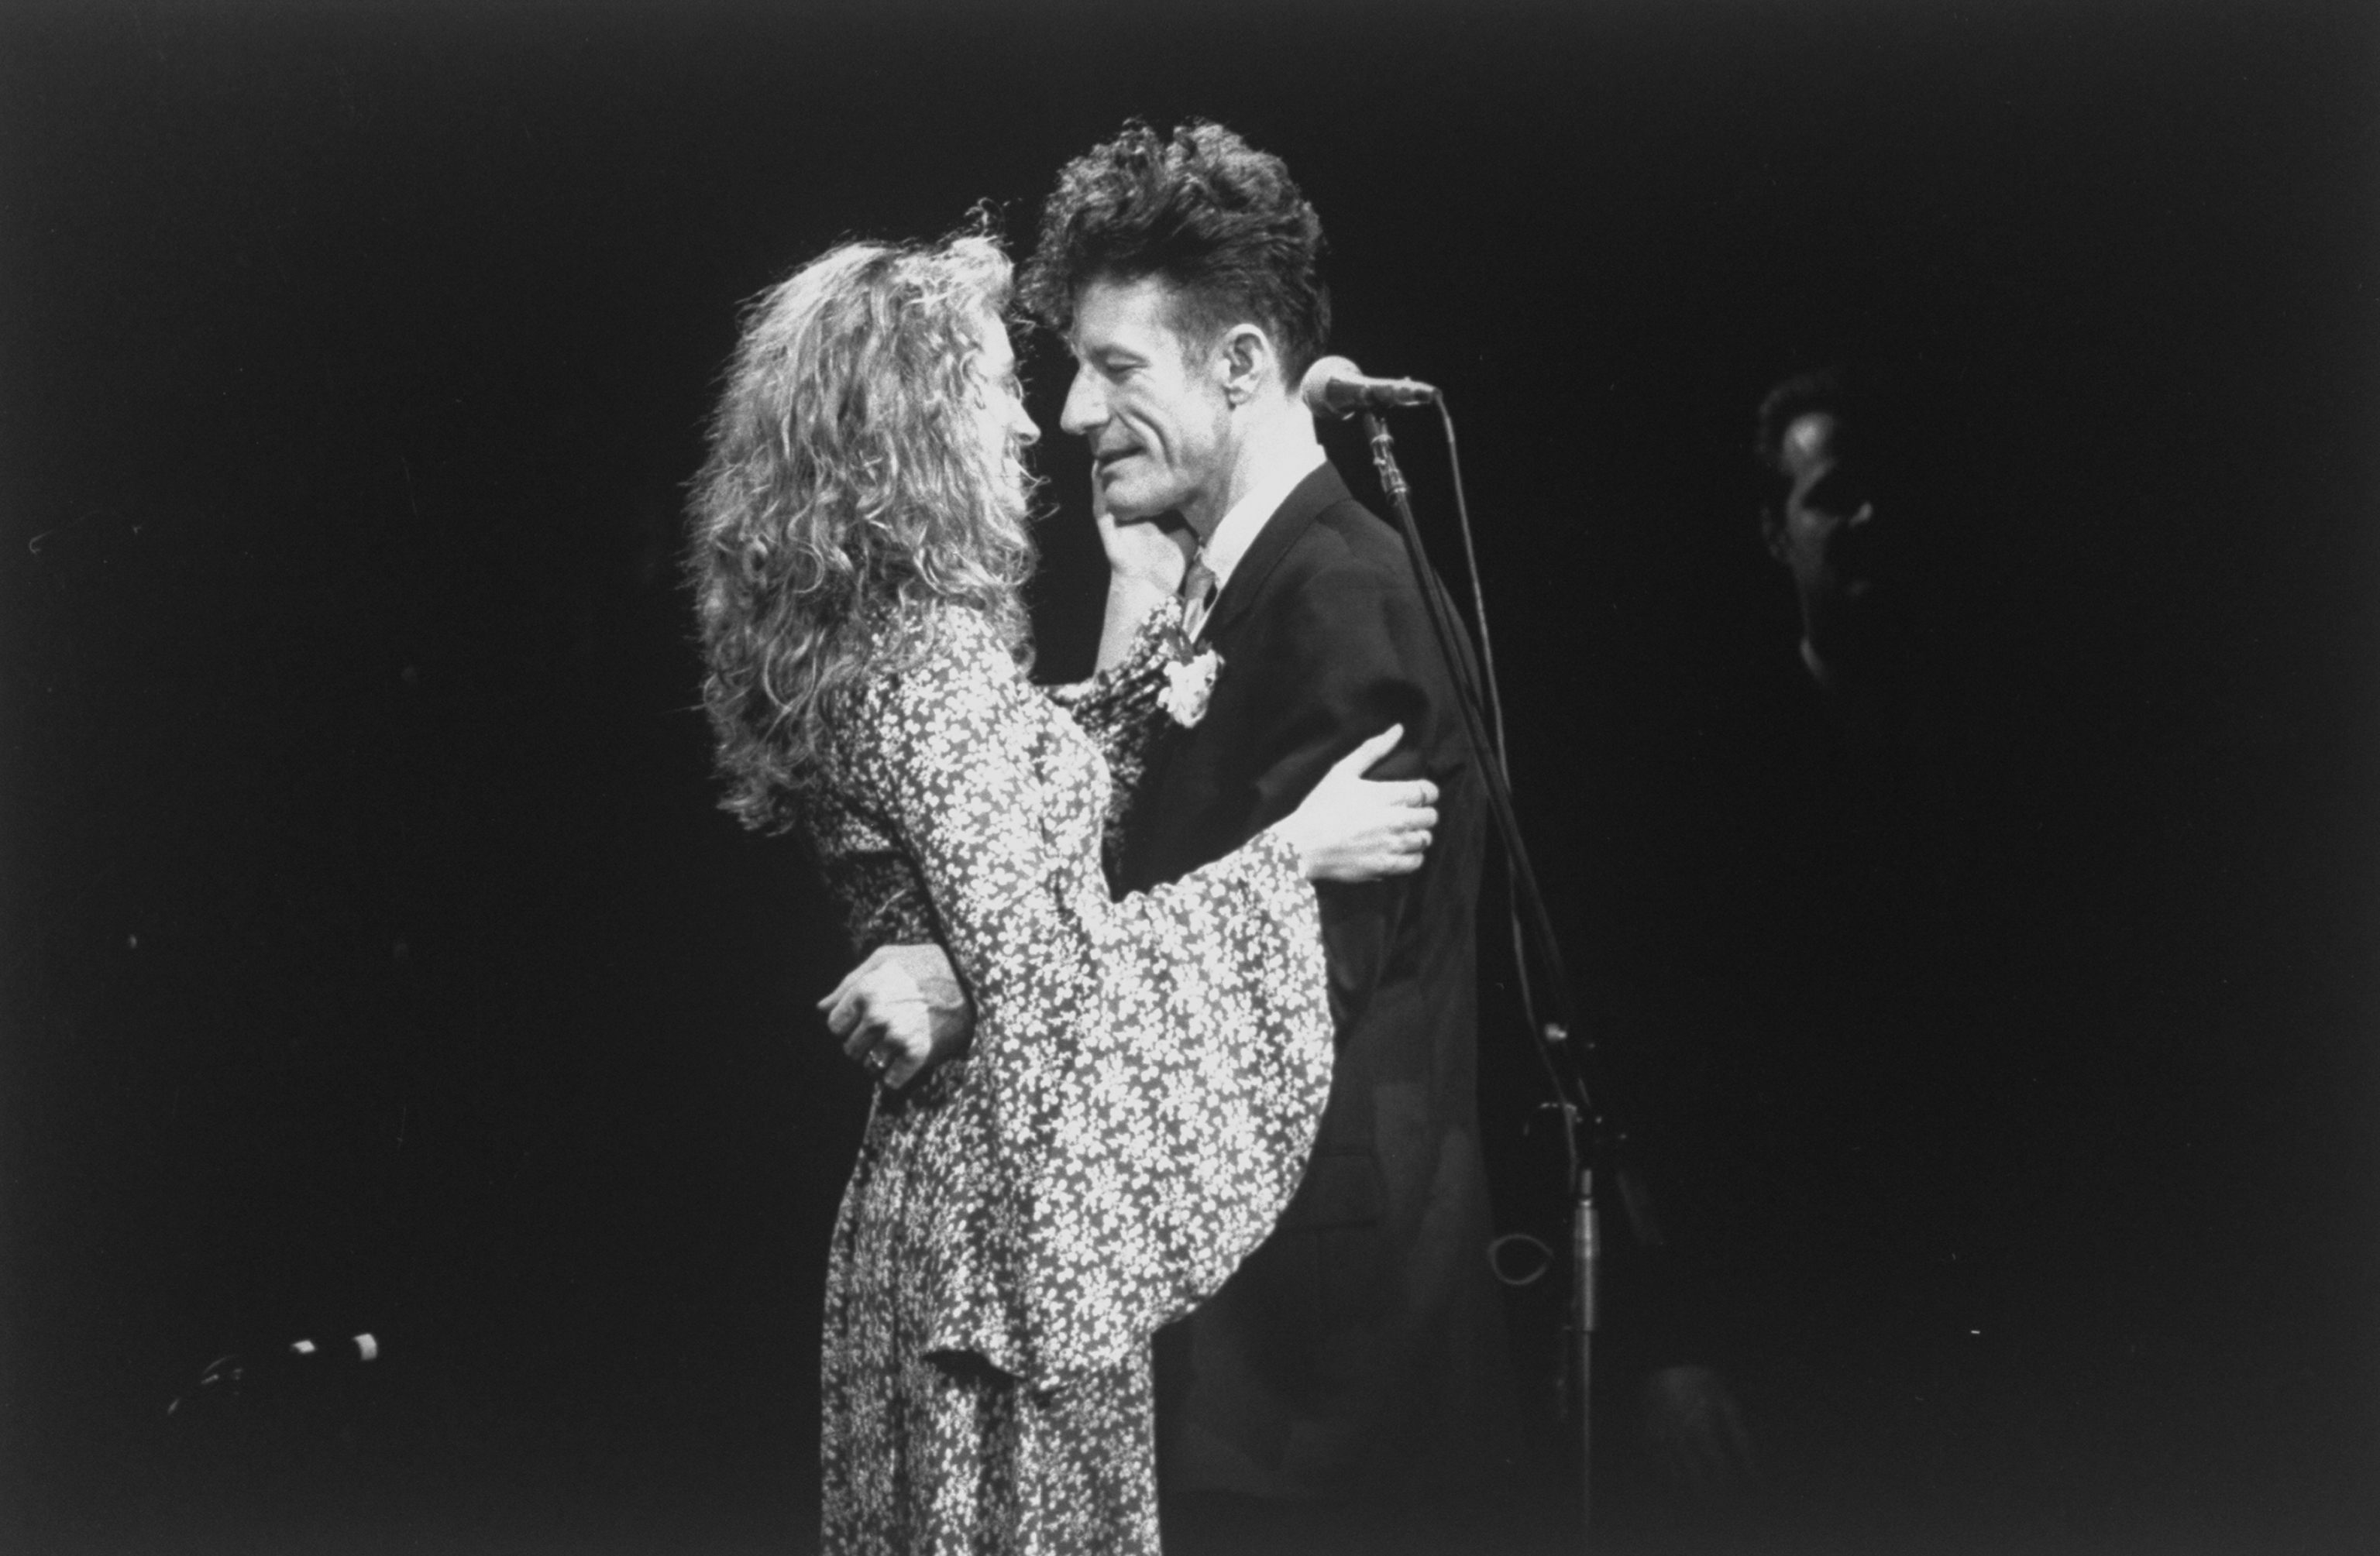 La actriz Julia Roberts y su esposo, el cantante Lyle Lovett, abrazados durante el concierto de éste en 1993 | Foto: Getty Images